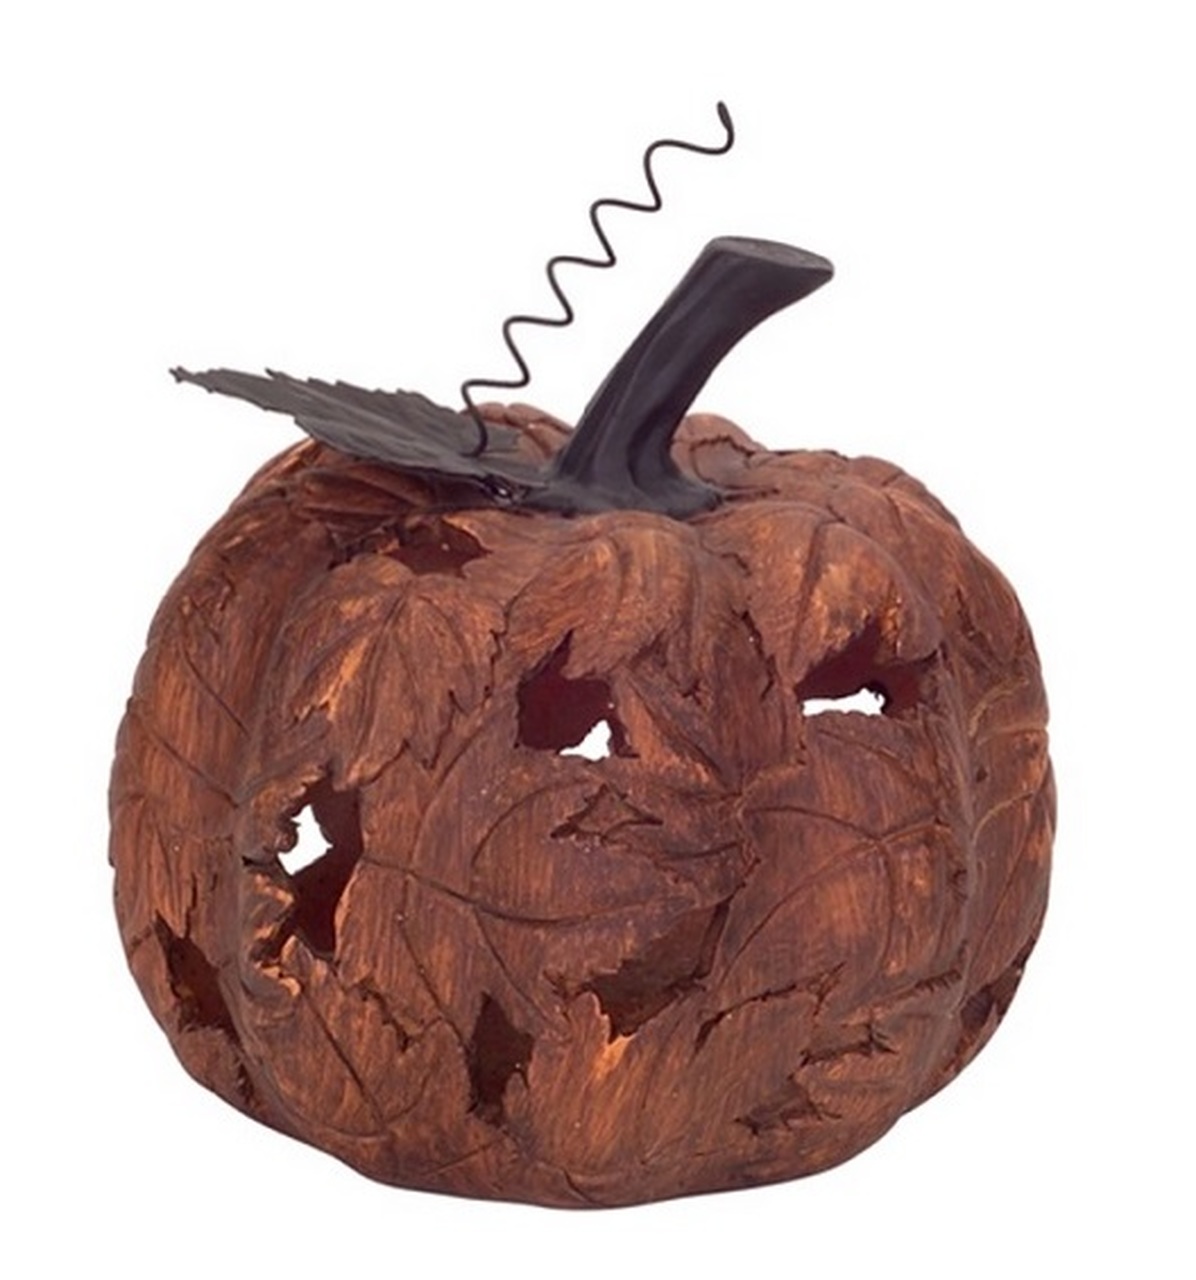 Decorative Fall Pumpkin Decor Piece